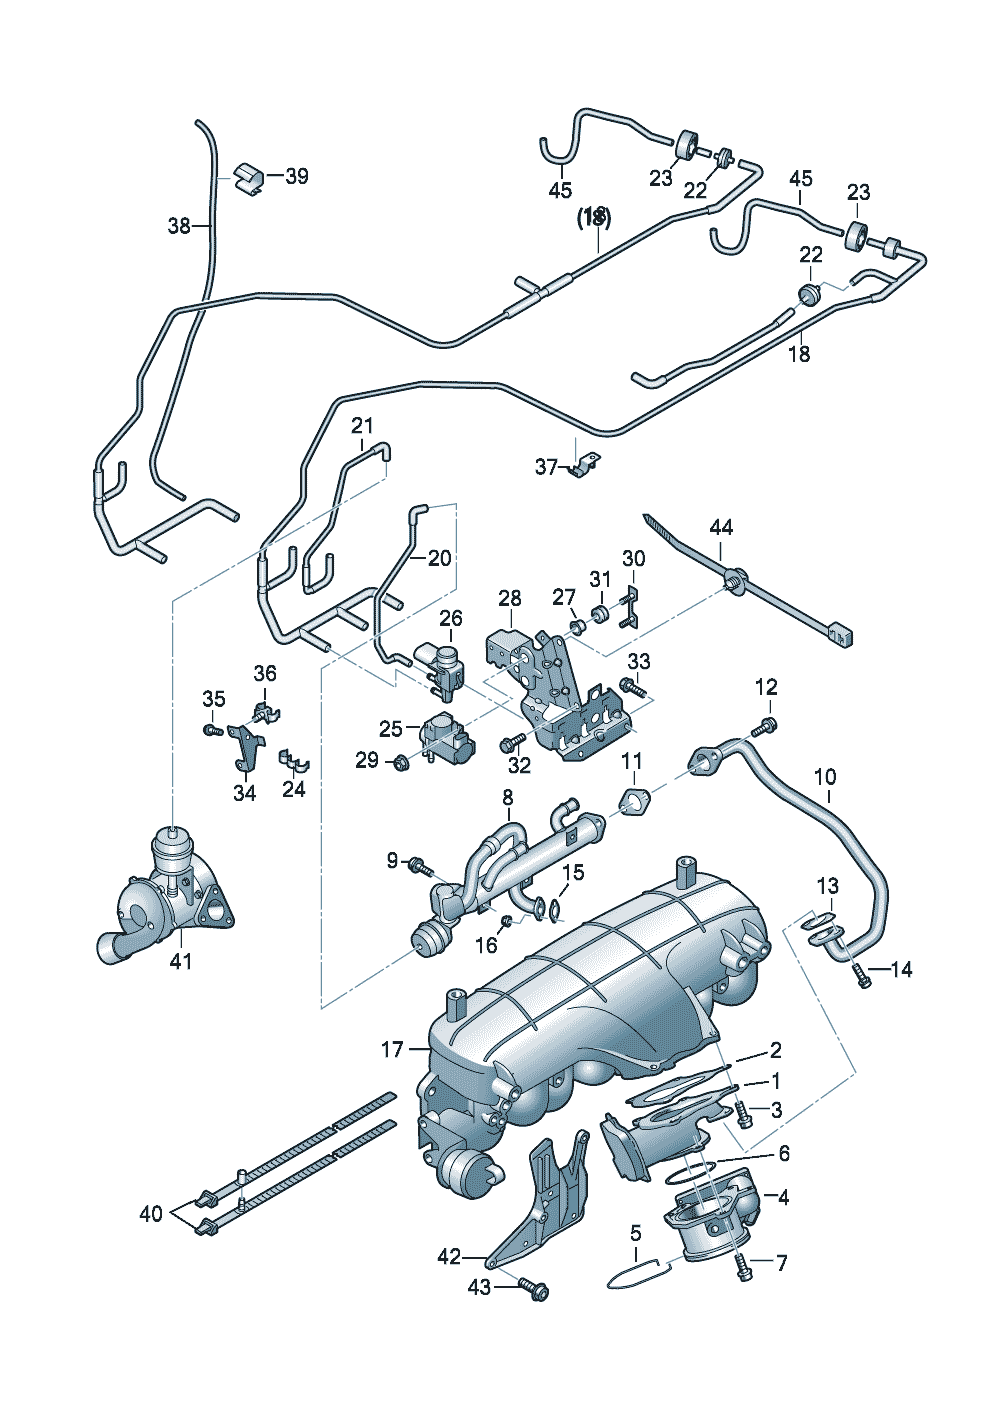 UnterdruckanlageAbgasrückführung 2,0Ltr. - Audi A6/Avant - a6